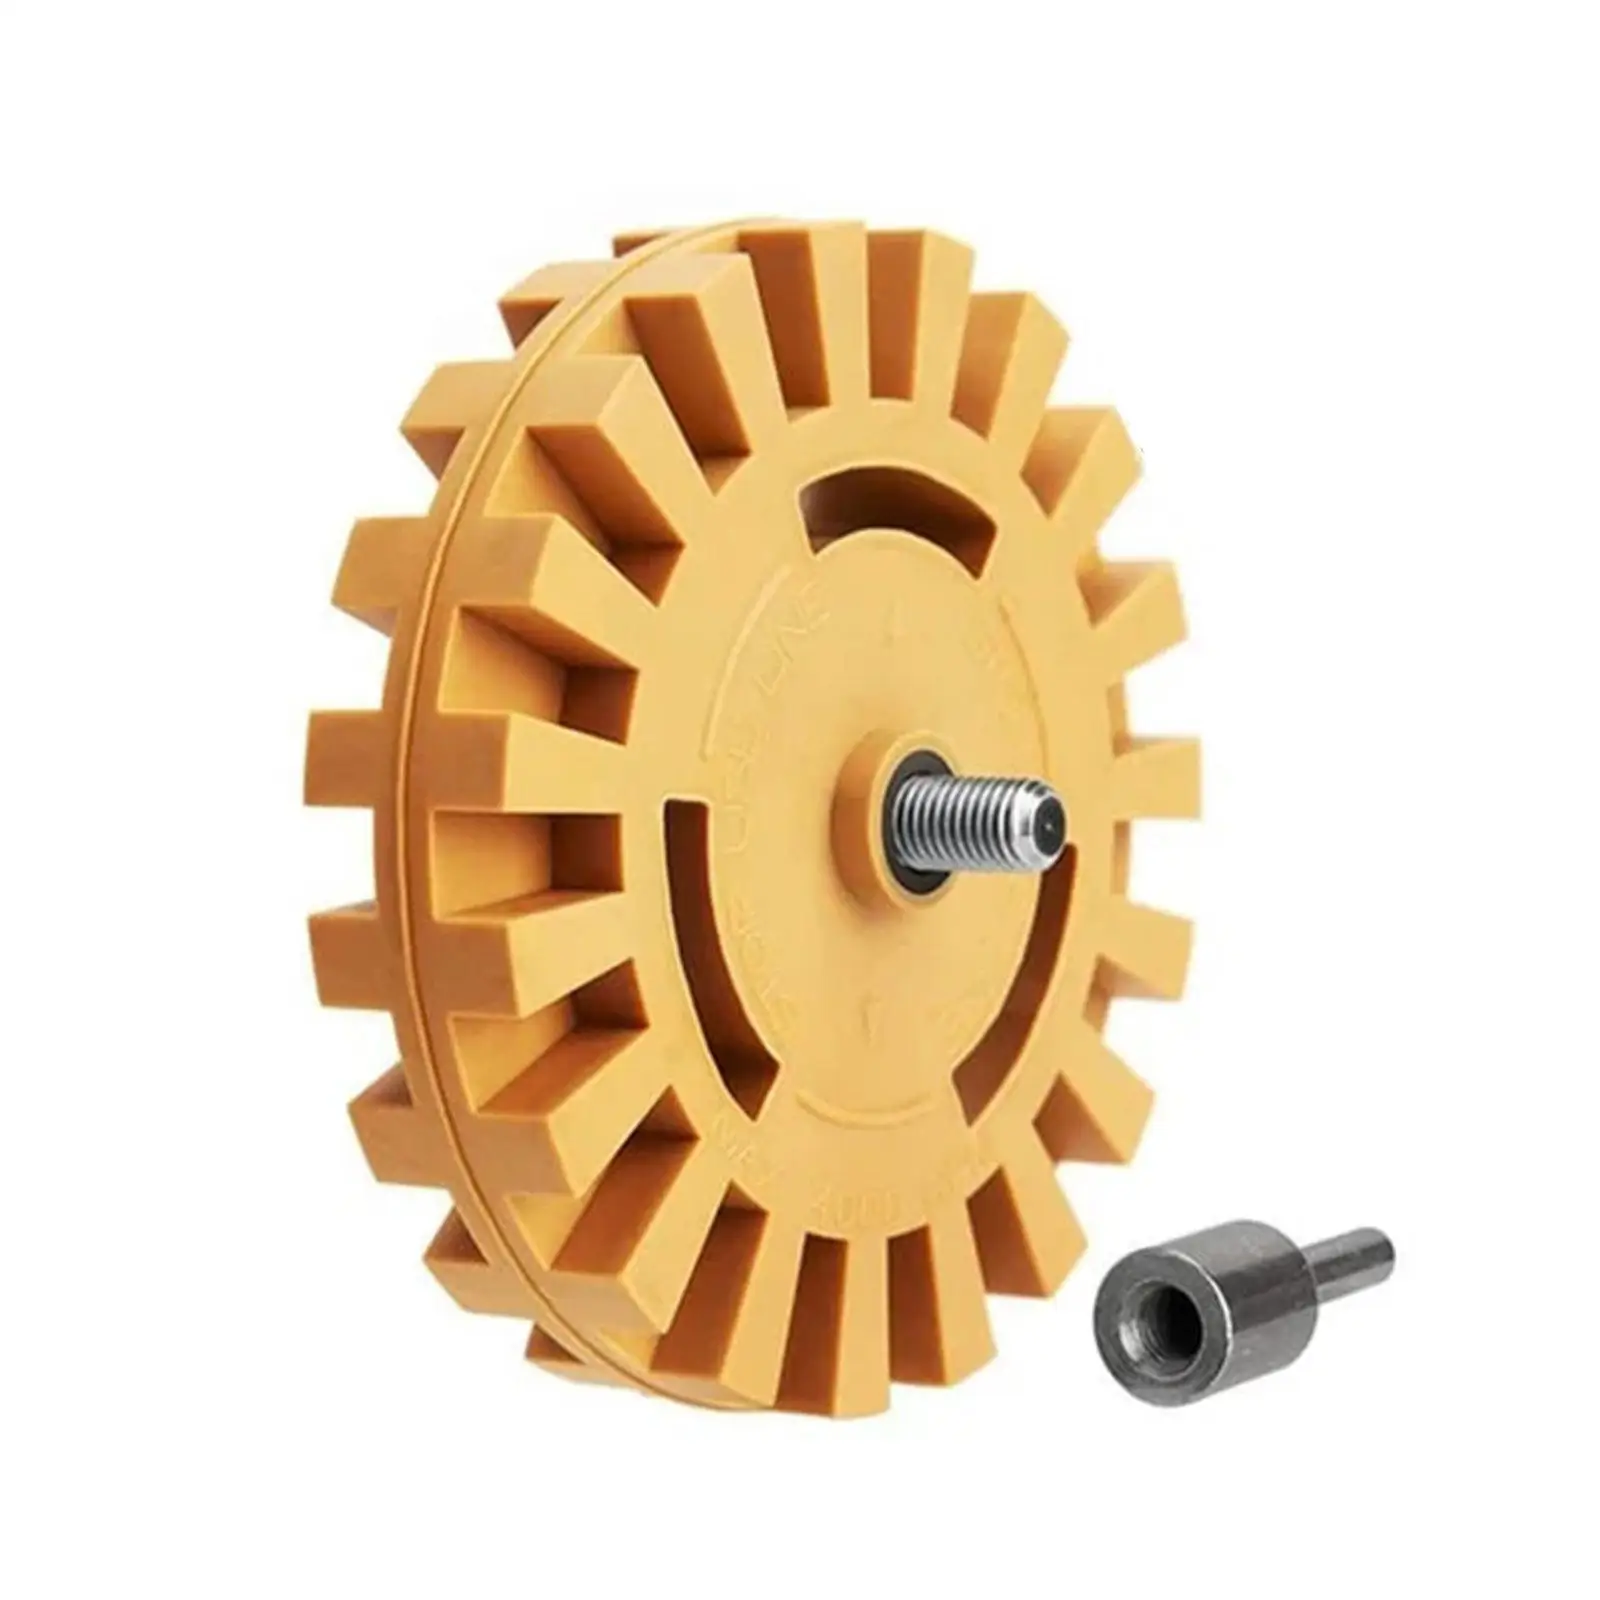 4-дюймовое универсальное резиновое колесо-ластик для удаления автомобильного клея клейкая наклейка авто ремонт краски инструмент резиновый ластик колесо D9S6 - 2